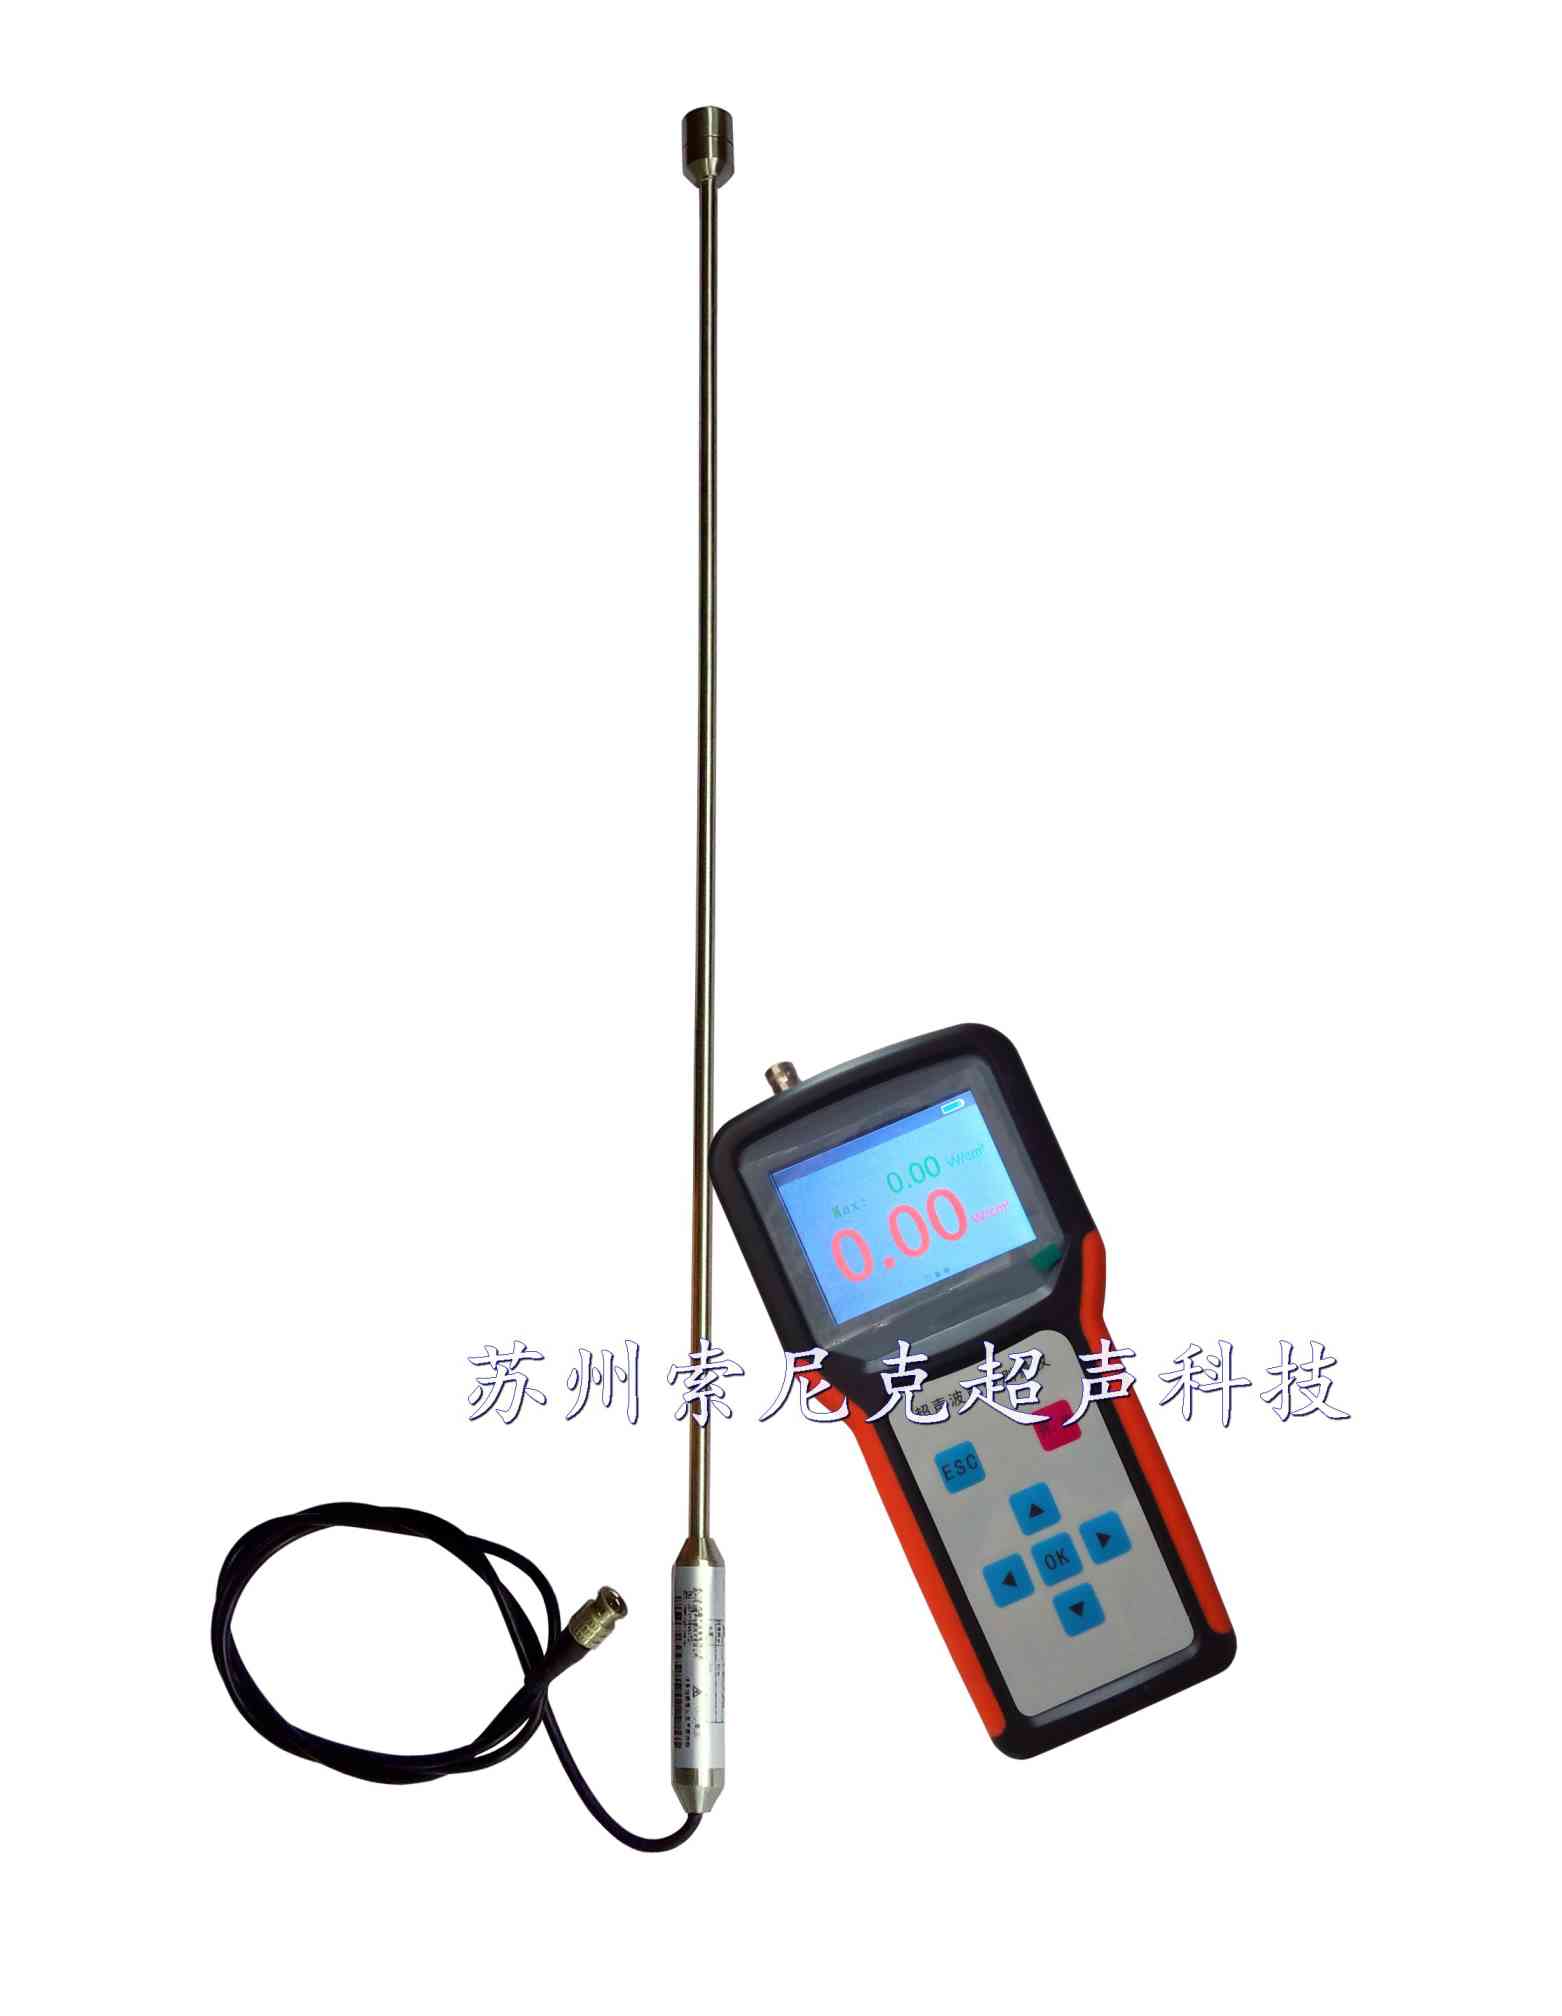 广州超声波能量分析仪供应,超声波能量分析仪图片,超声波能量分析仪说明书 